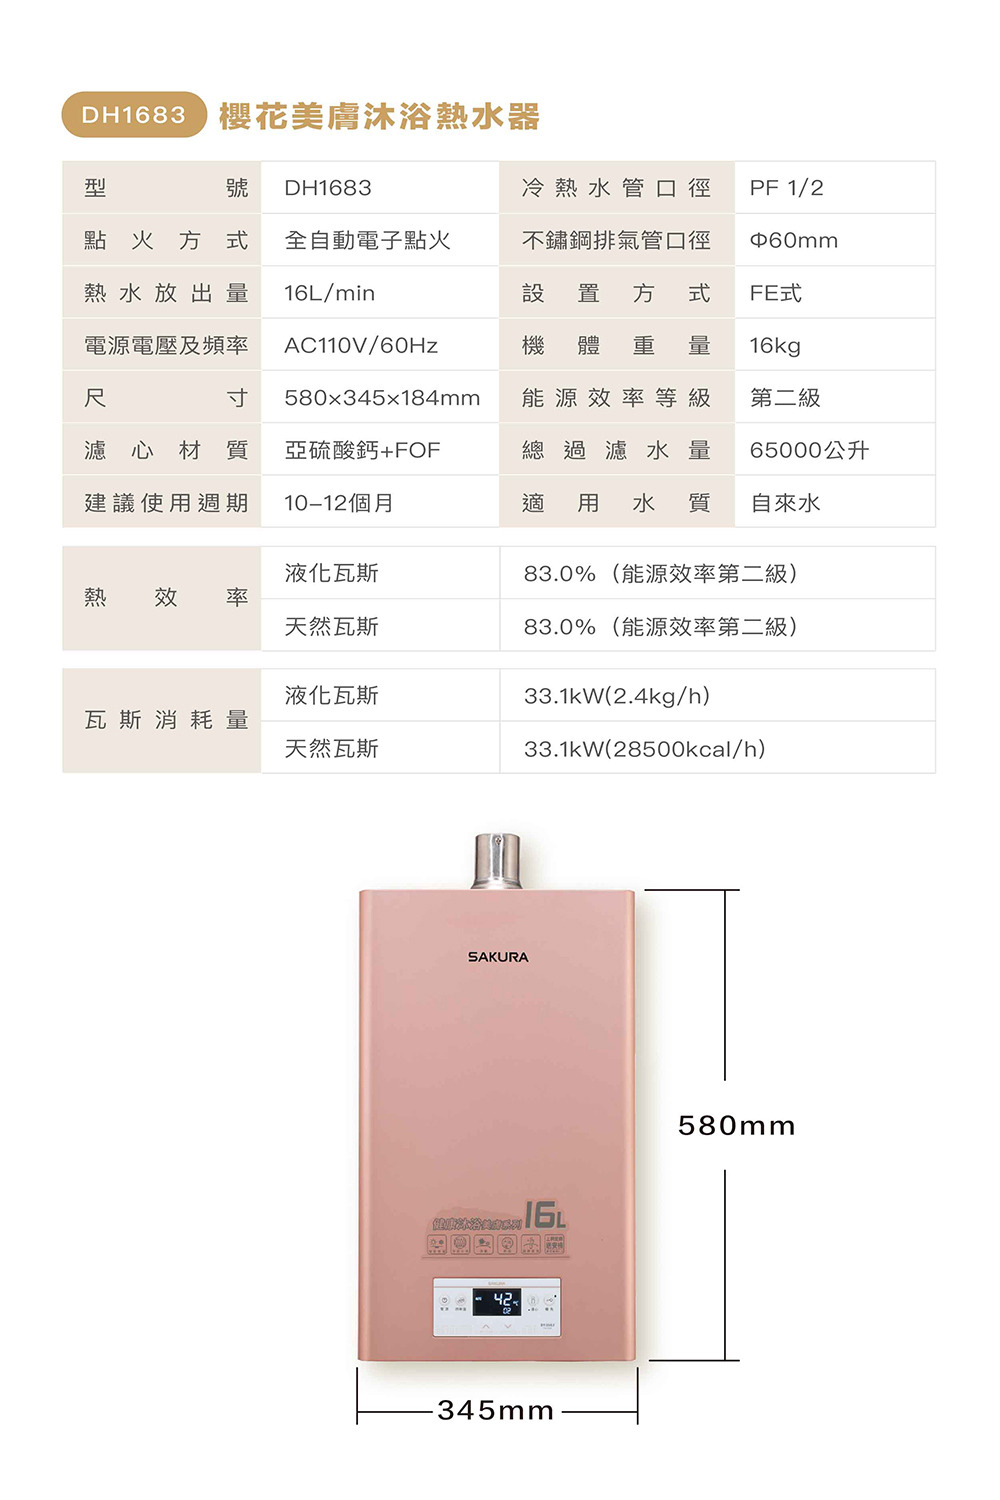 DH1683美膚沐浴熱水器規格